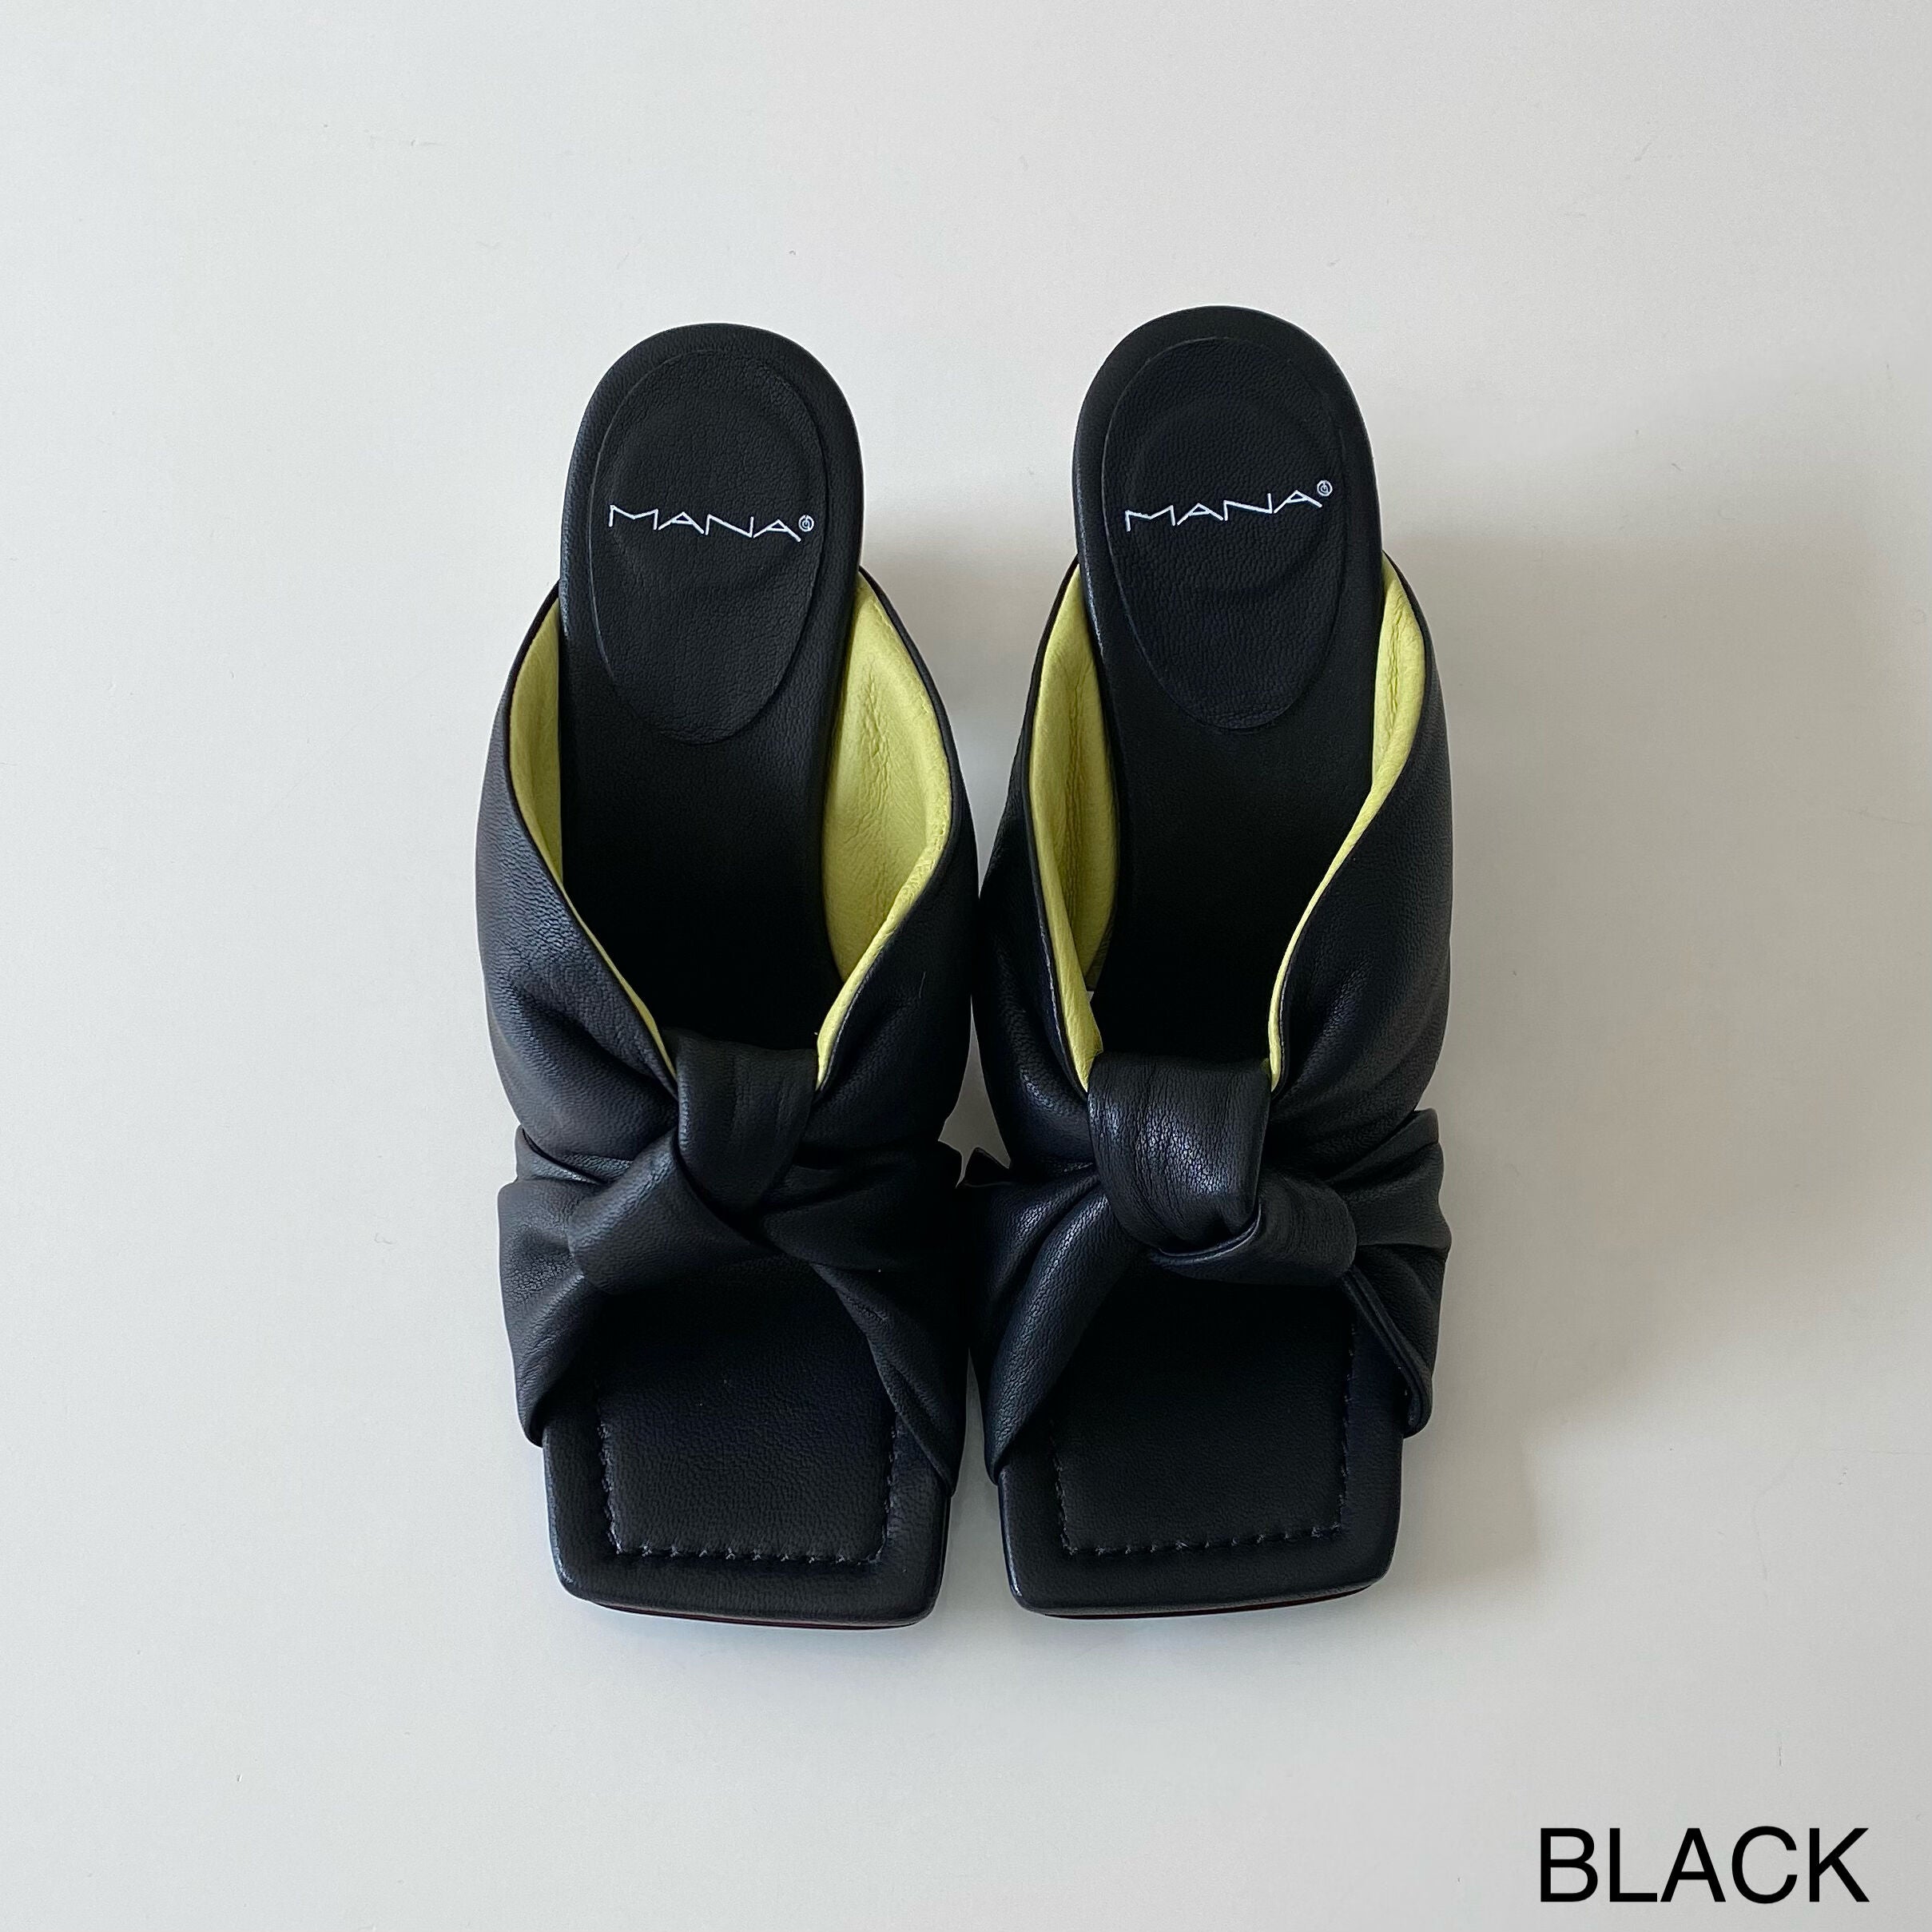 BLACK / 35(22.5cm)